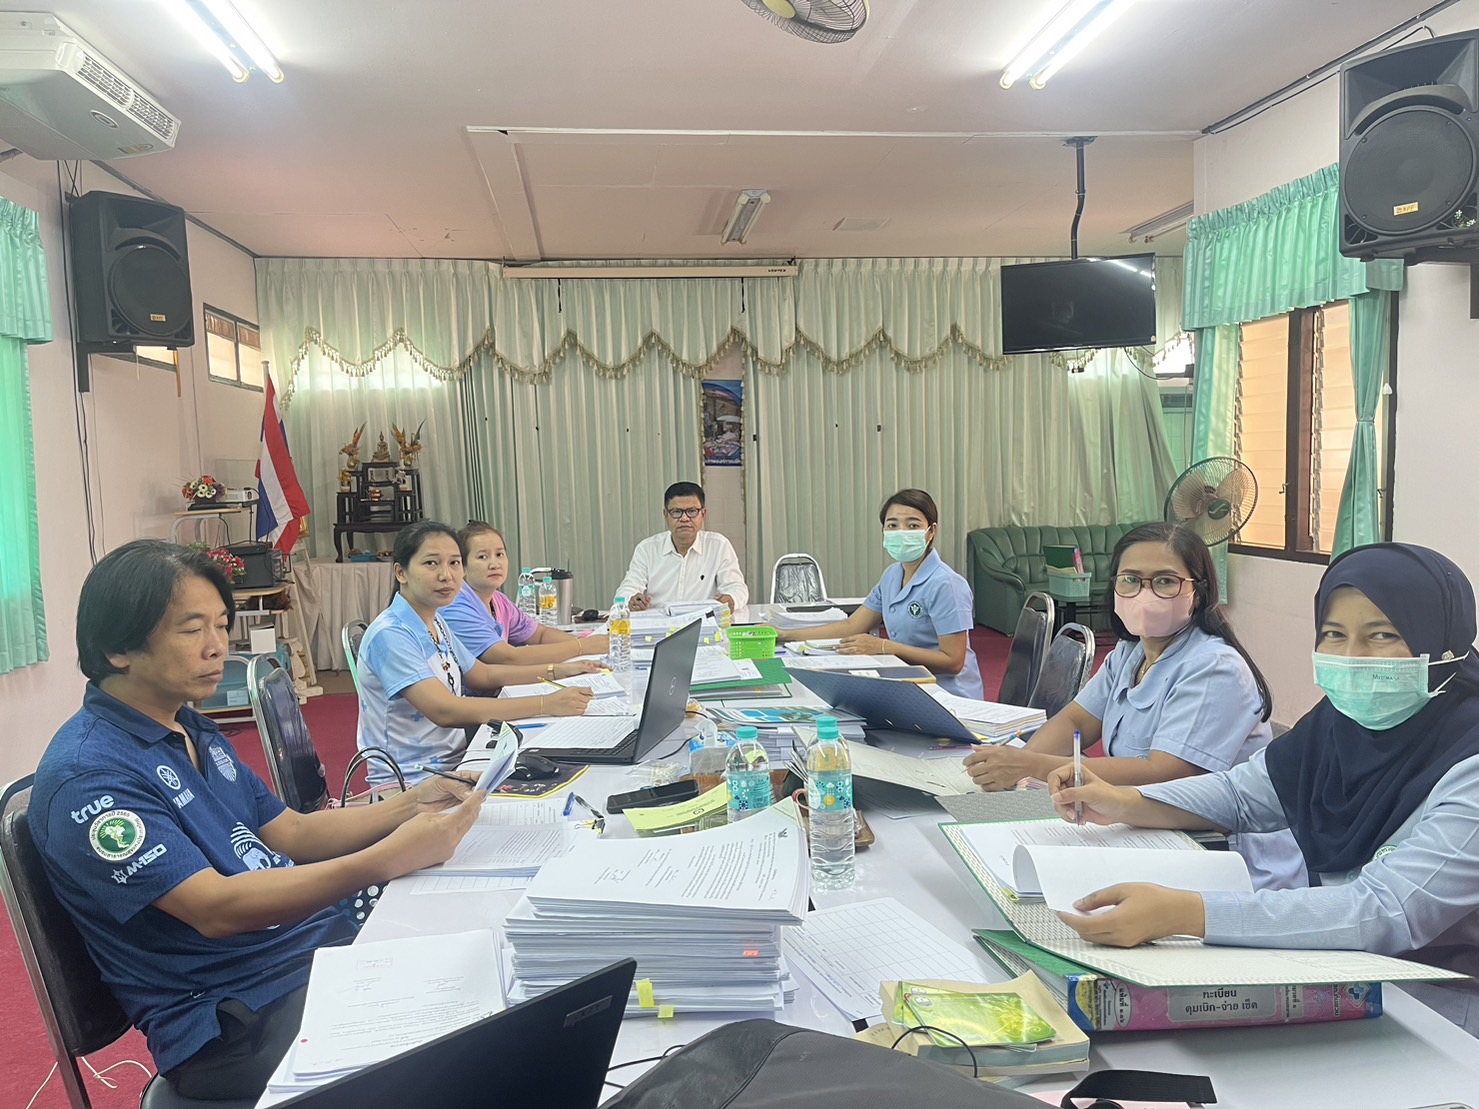 วันที่ 20 มกราคม 2566 นายสรรเพชญ เรืองอร่าม ตำแหน่งนักวิชาการสาธารณสุขชำนาญการ พร้อมด้วยคณะกรรมการตรวจสอบภายในระดับอำเภอ ได้ดำเนินการตรวจสอบภายในหน่วยบริการ ในระดับโรงพยาบาลส่งเสริมสุขภาพตำบลในเครือข่าย  ประจำปีงบประมาณ 2566